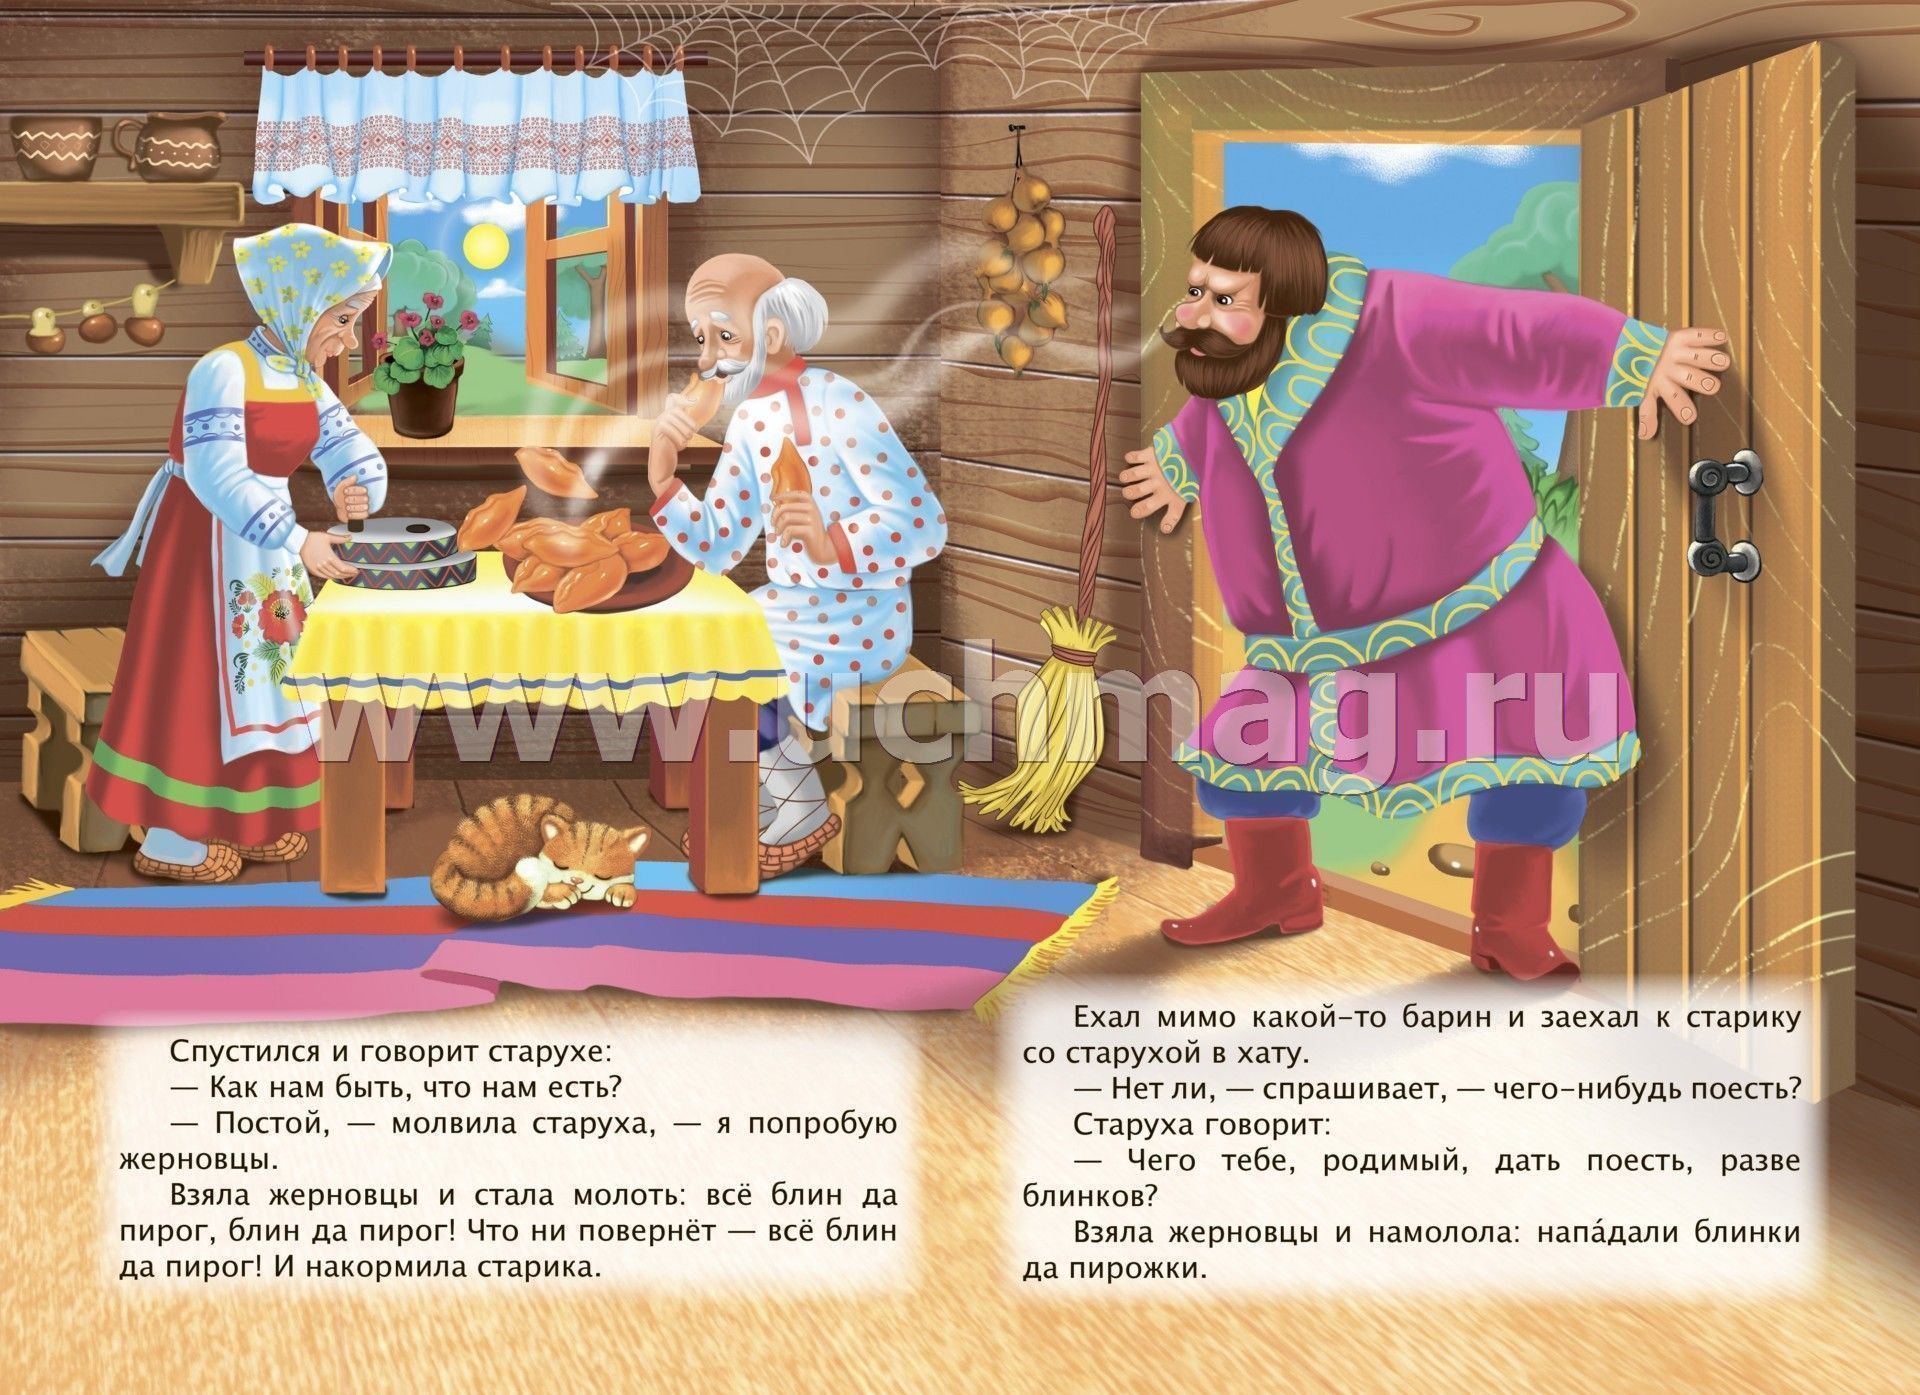 «петушок - золотой гребешок и жерновцы» - русская народная сказка